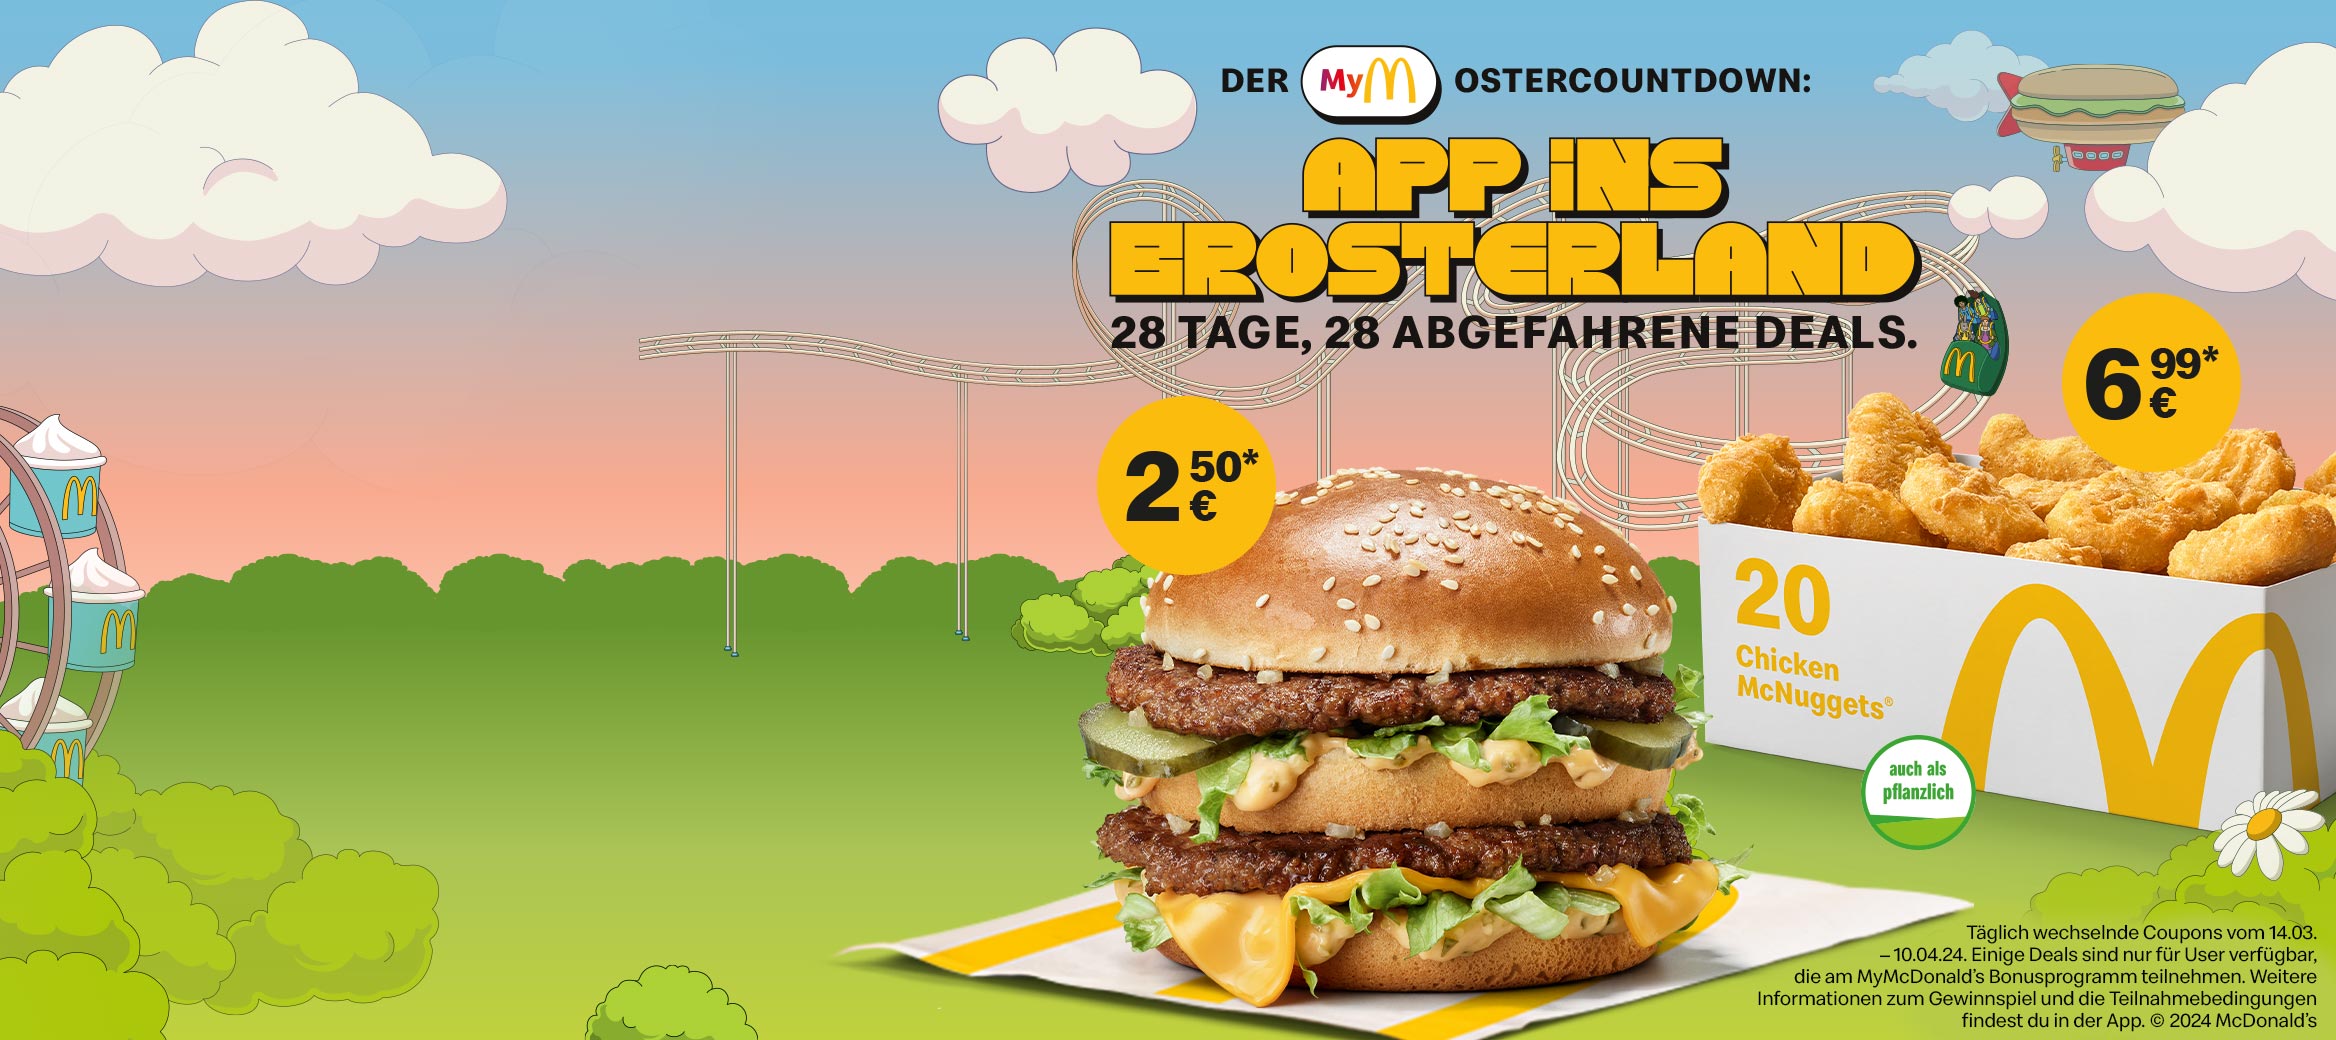 Wir sehen einen Big Mac® für nur 2,50 €. Überschrift: Der MyMcDonald’sOstercountdown: App ins Brosterland! 28 Tage, 28 abgefahrene Deals.